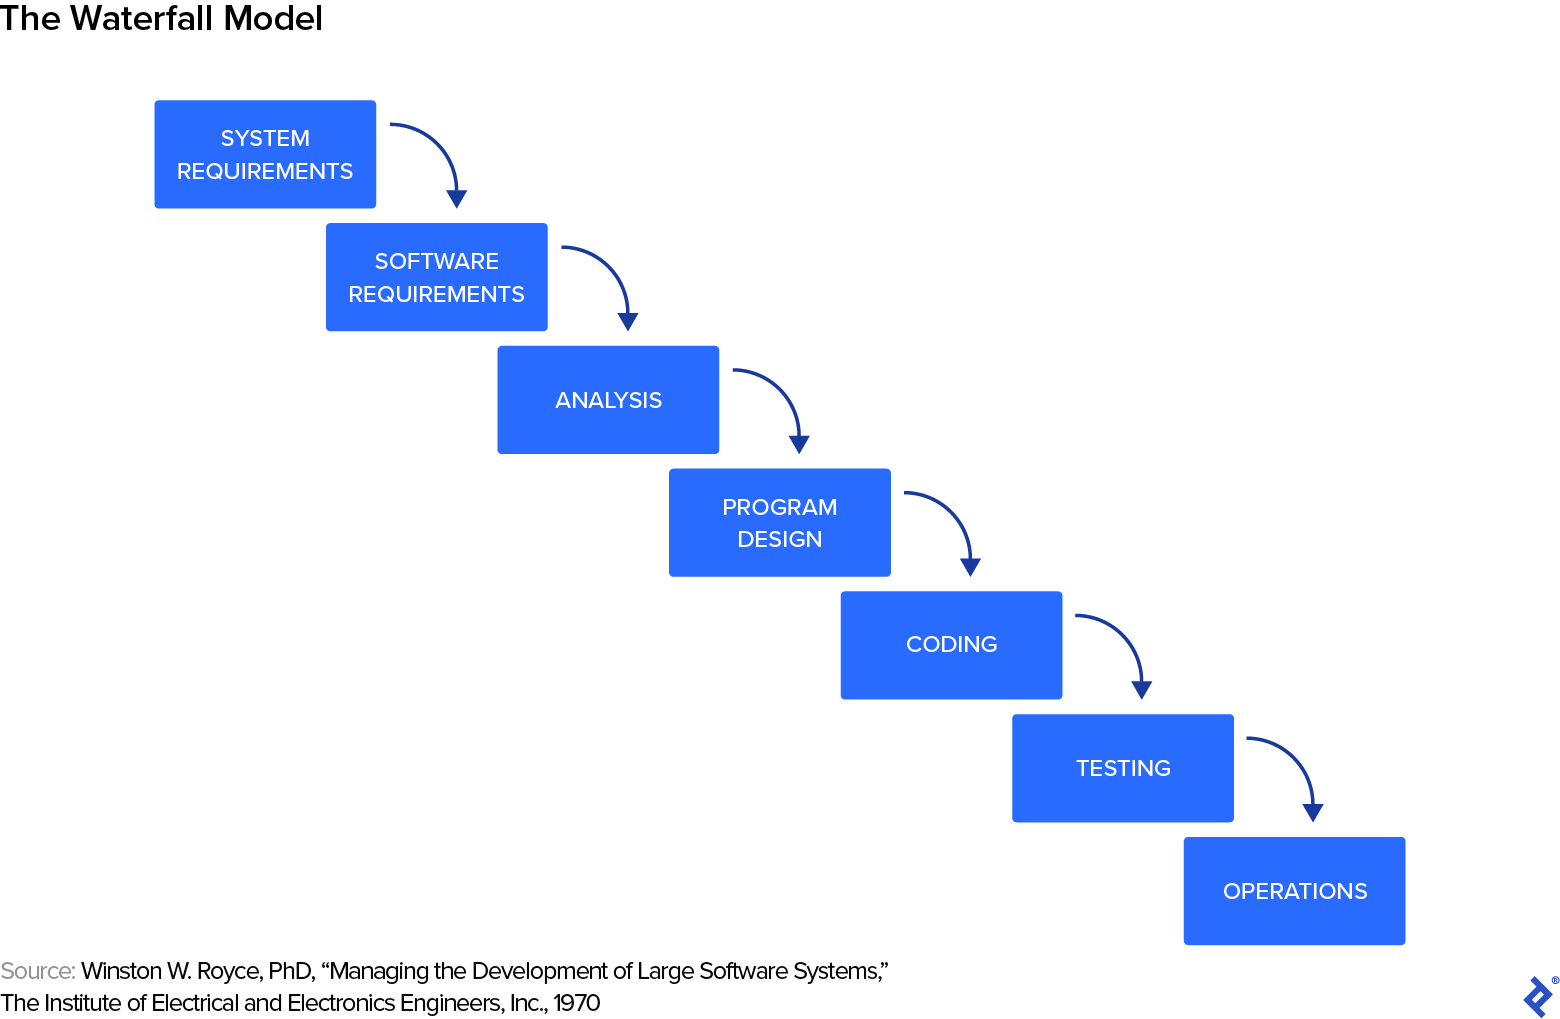 Le modèle Waterfall, une série d'étapes allant des exigences système, des exigences logicielles, de l'analyse, de la conception du programme, du codage, des tests aux opérations.